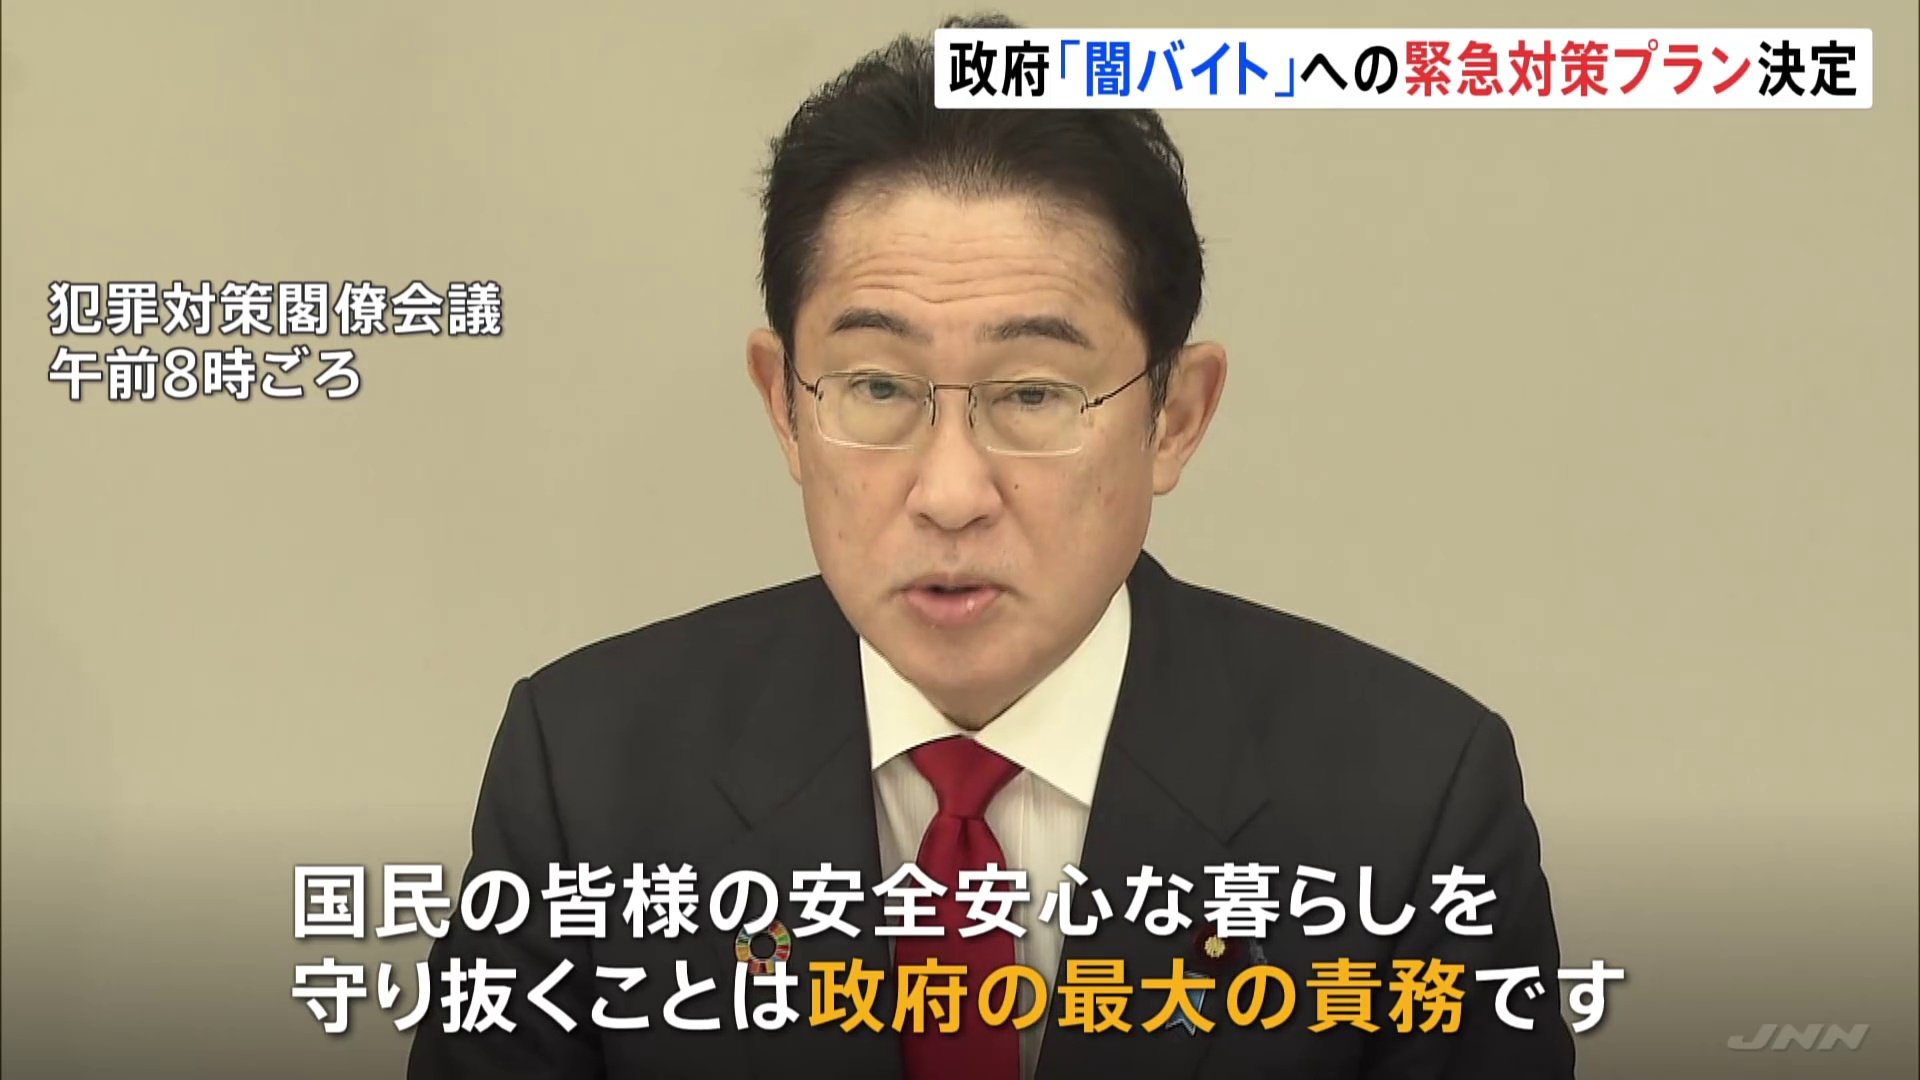 政府「闇バイト」の対策強化へ　岸田総理「安全安心な暮らしを守り抜くことは政府の最大の責務」